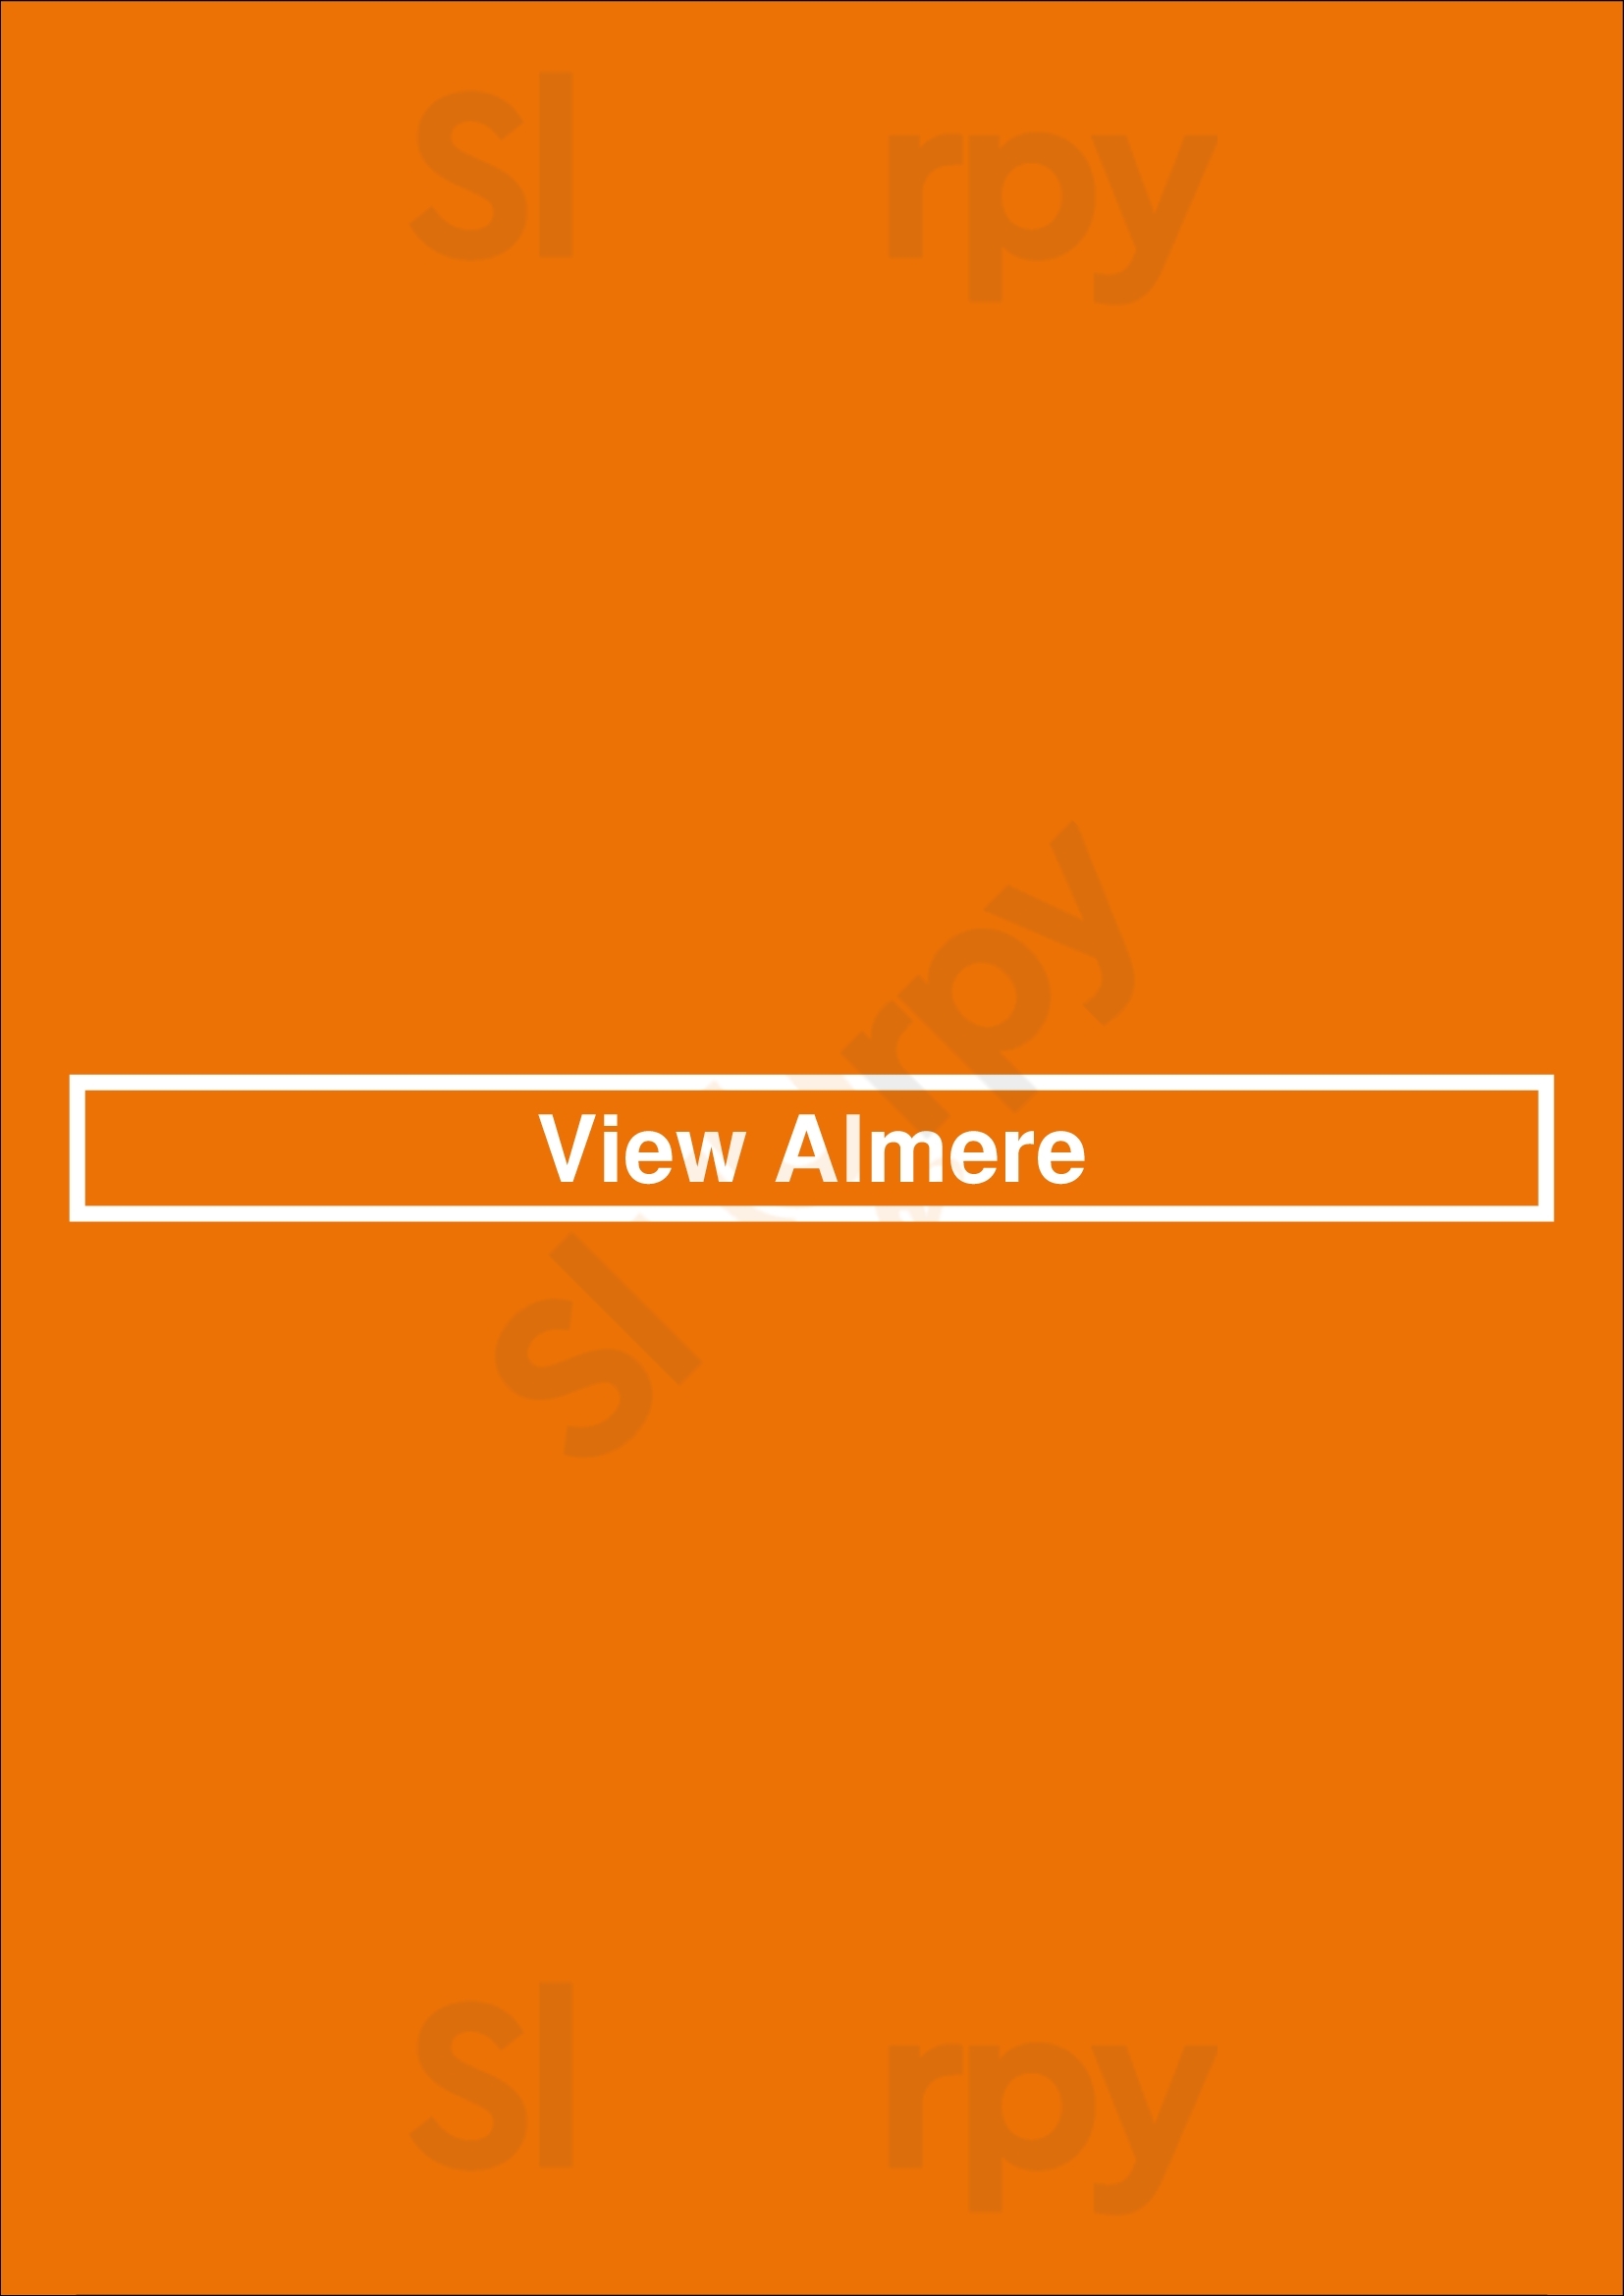 View Almere Almere Menu - 1